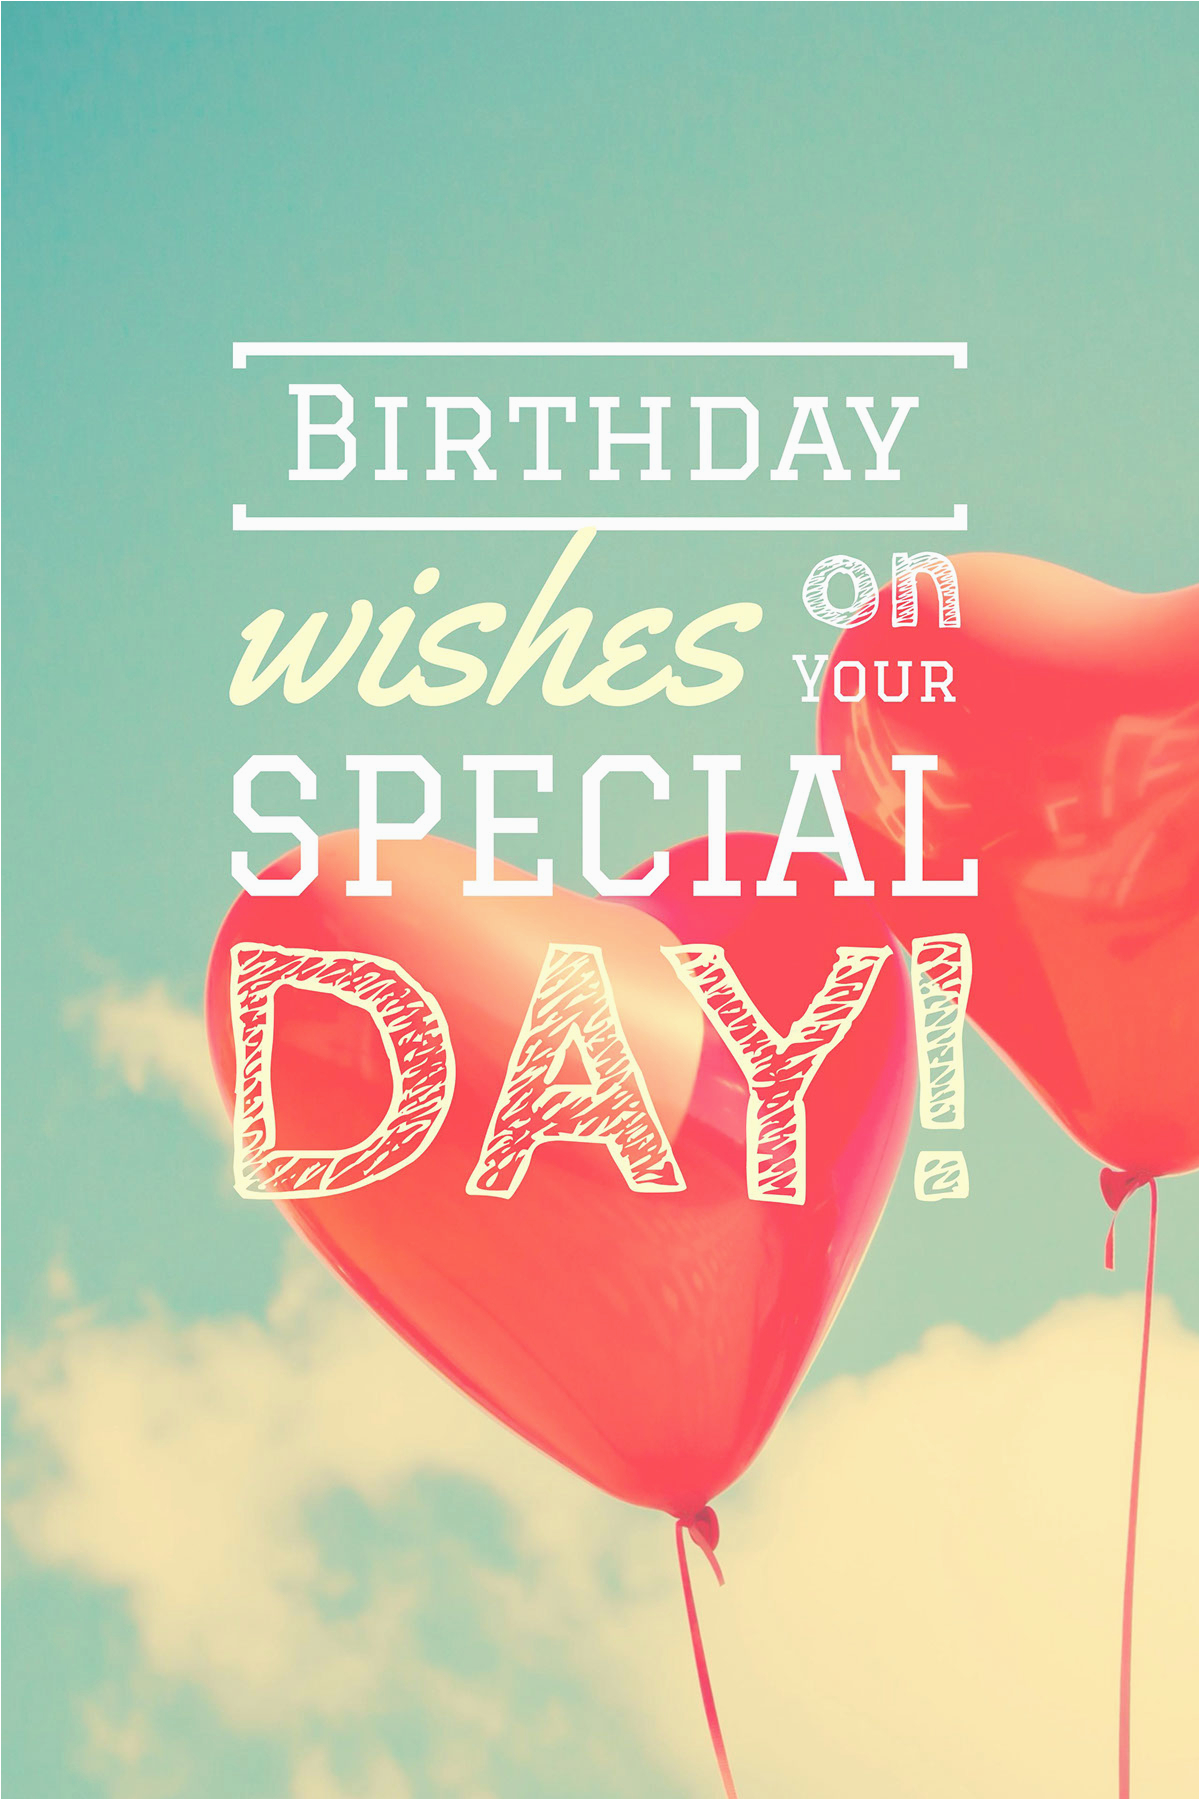 Make Your Own Birthday Card Free Printable | BirthdayBuzz